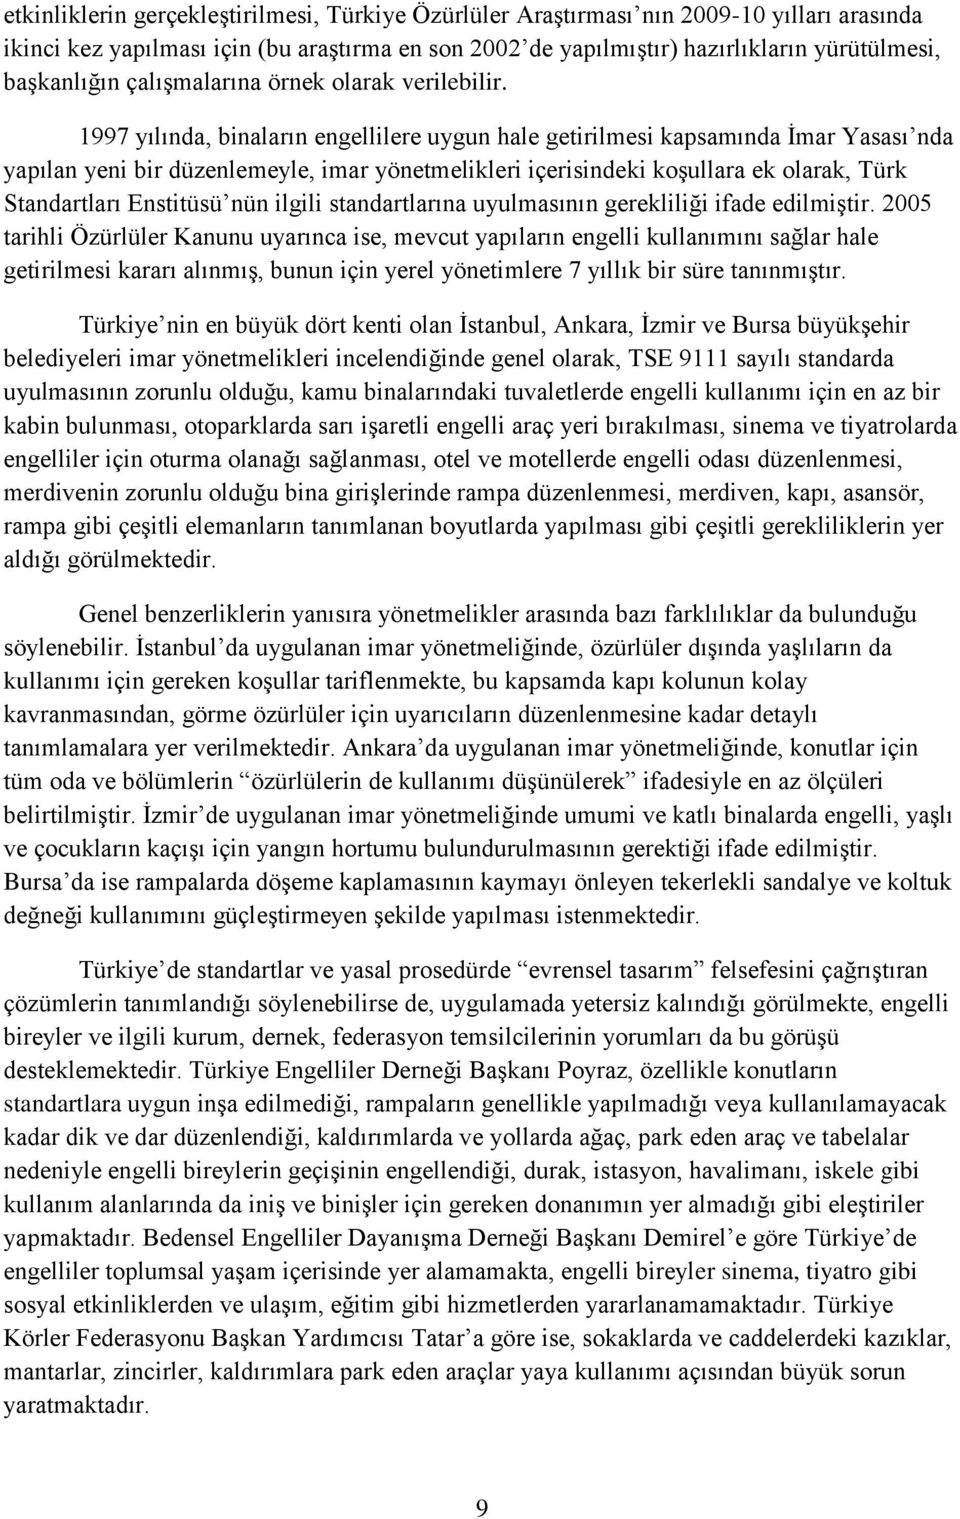 1997 yılında, binaların engellilere uygun hale getirilmesi kapsamında İmar Yasası nda yapılan yeni bir düzenlemeyle, imar yönetmelikleri içerisindeki koşullara ek olarak, Türk Standartları Enstitüsü